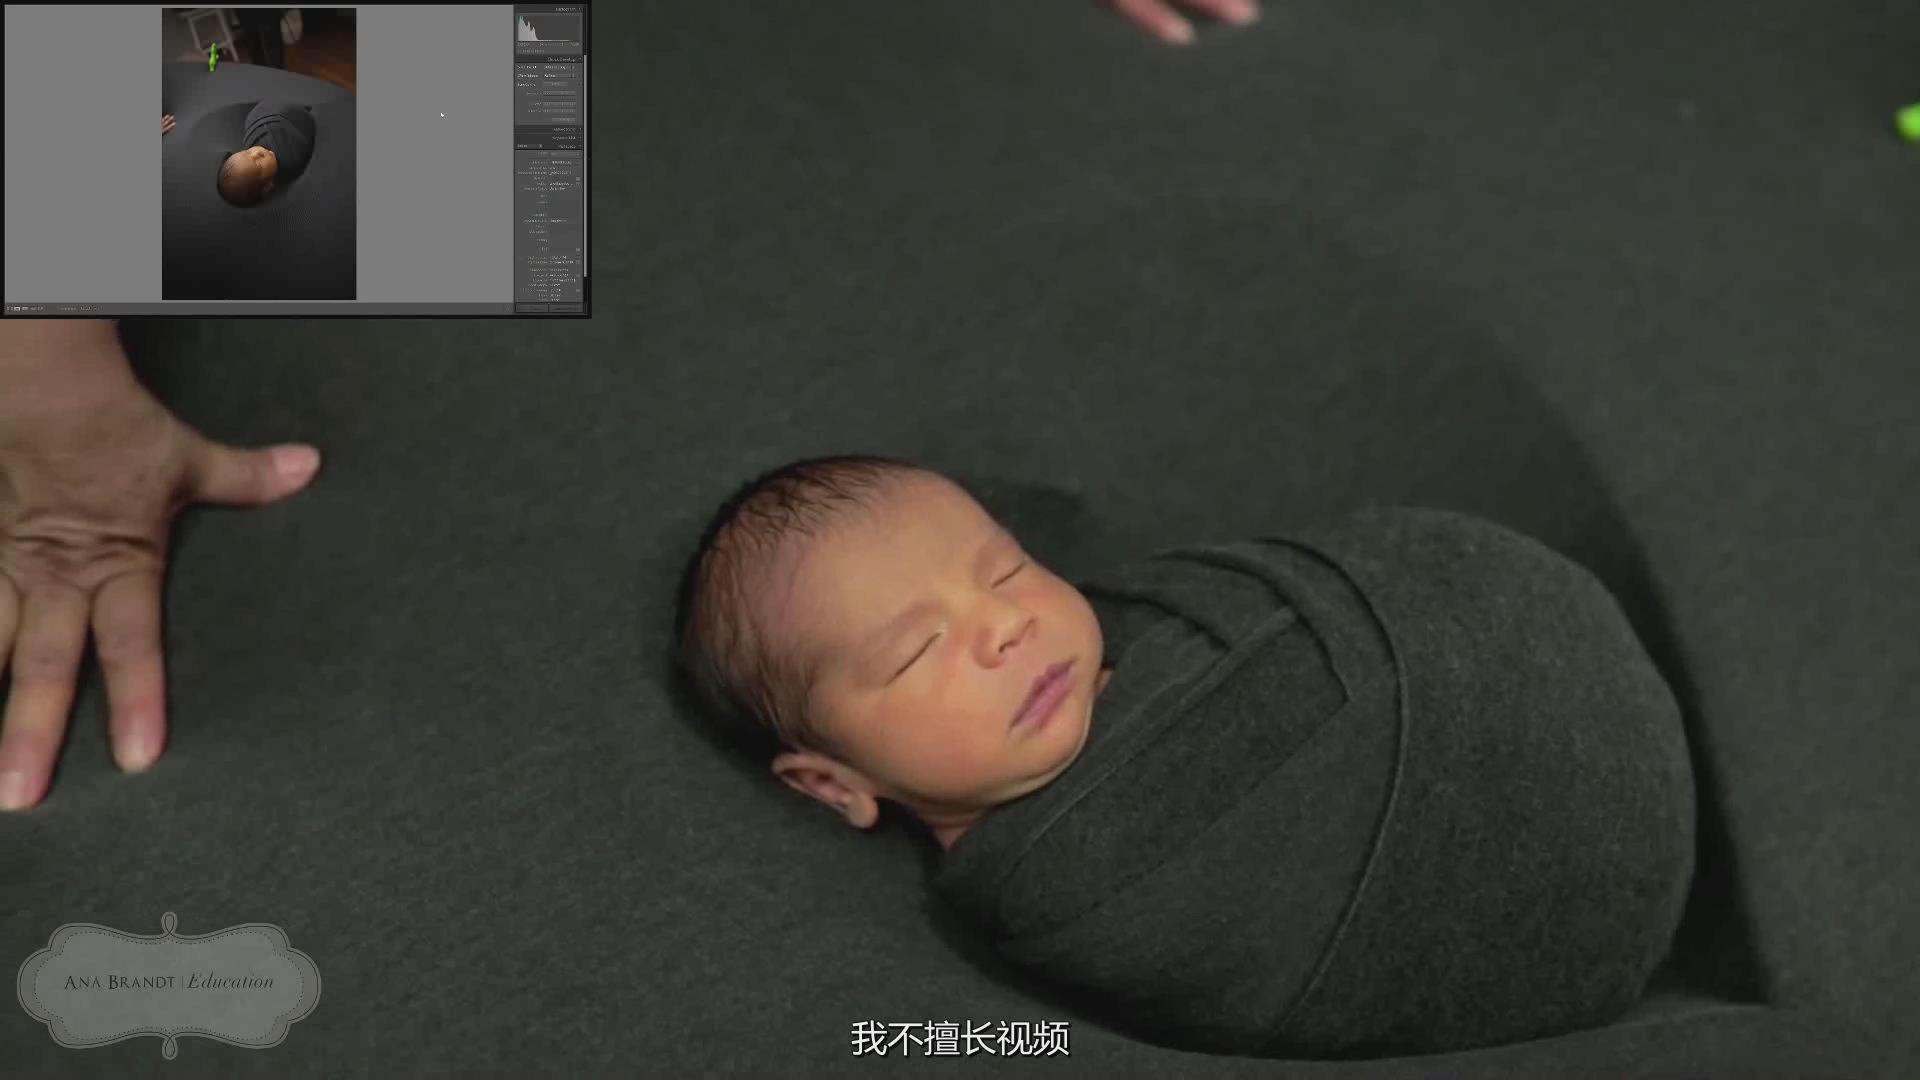 新生儿摆姿包裹造型摄影培训视频课程